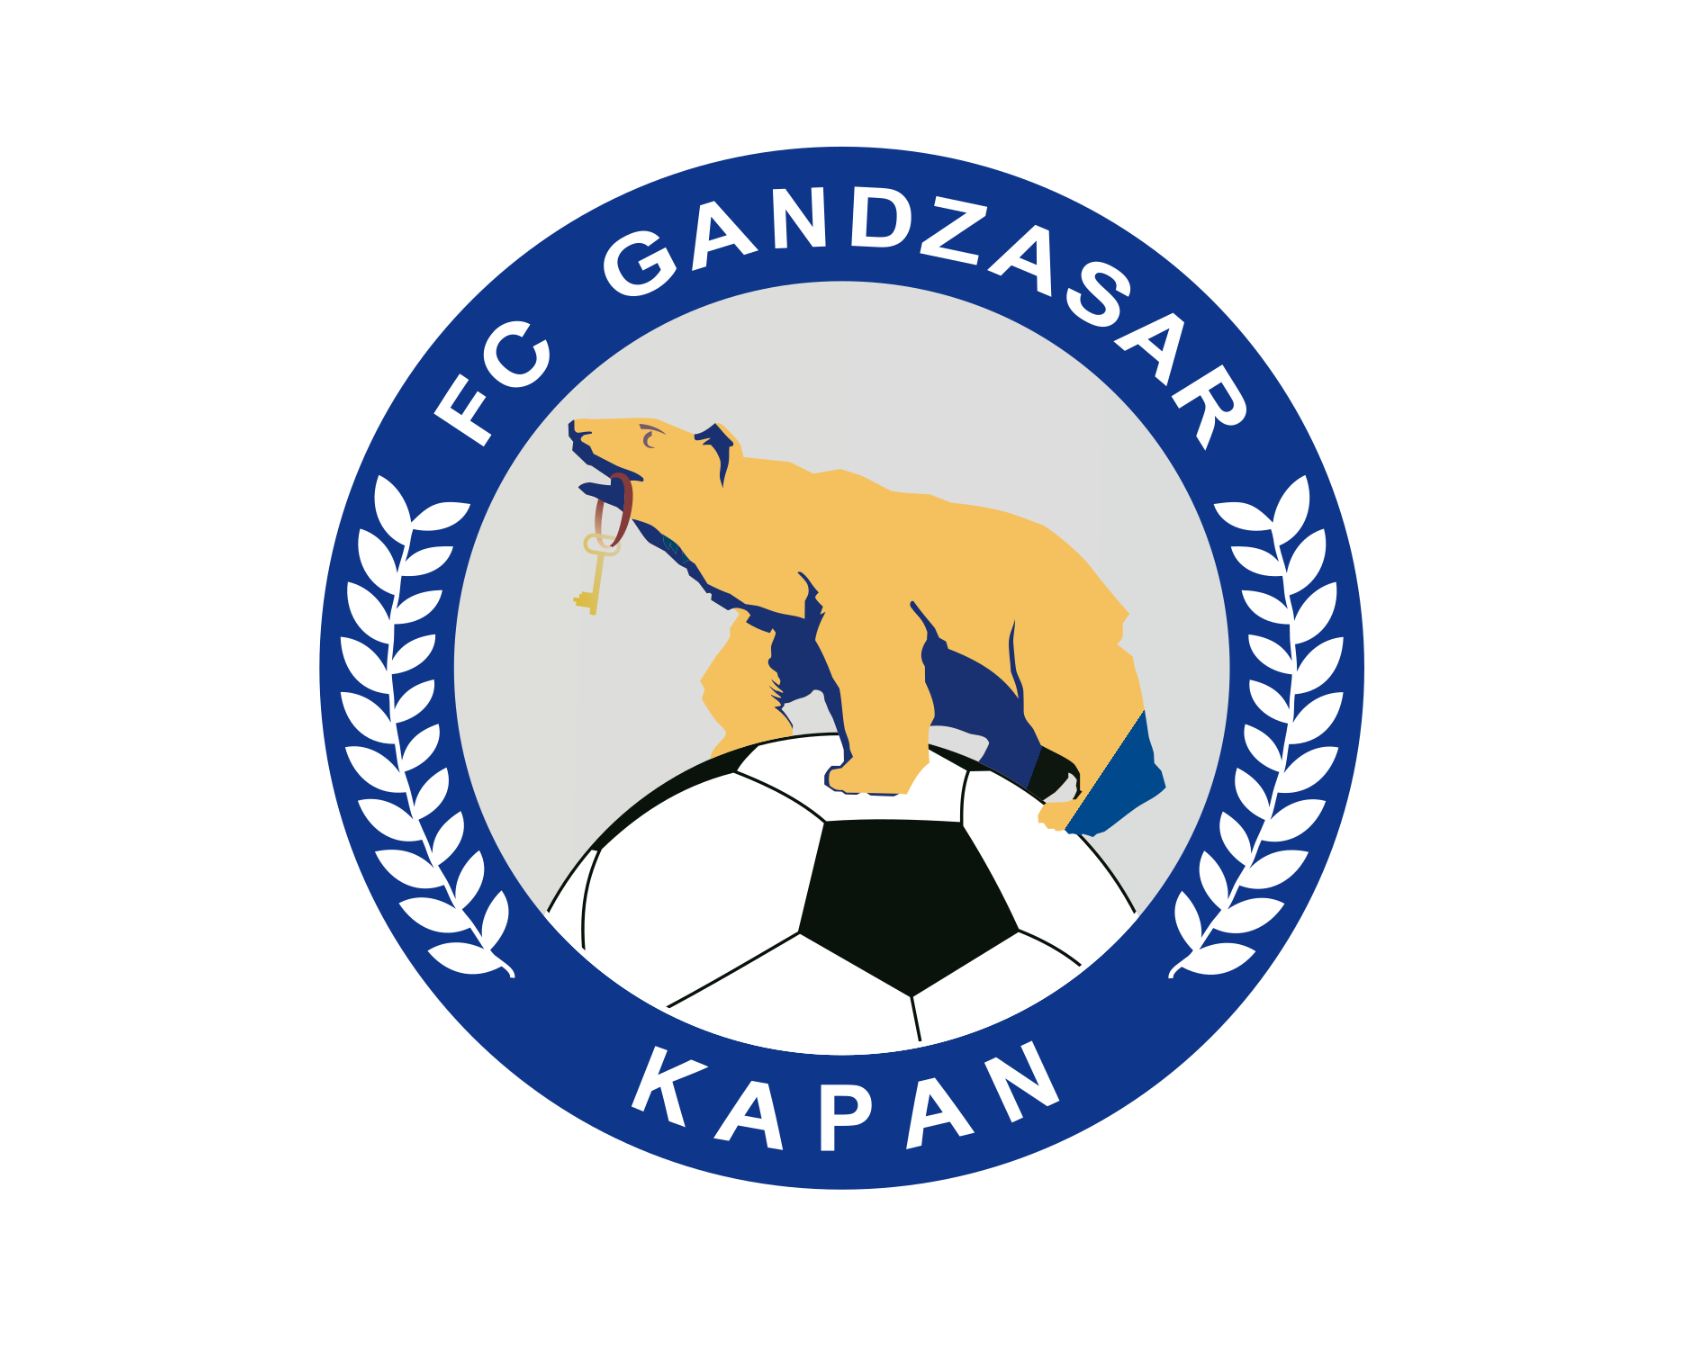 gandzasar-kapan-fc-24-football-club-facts